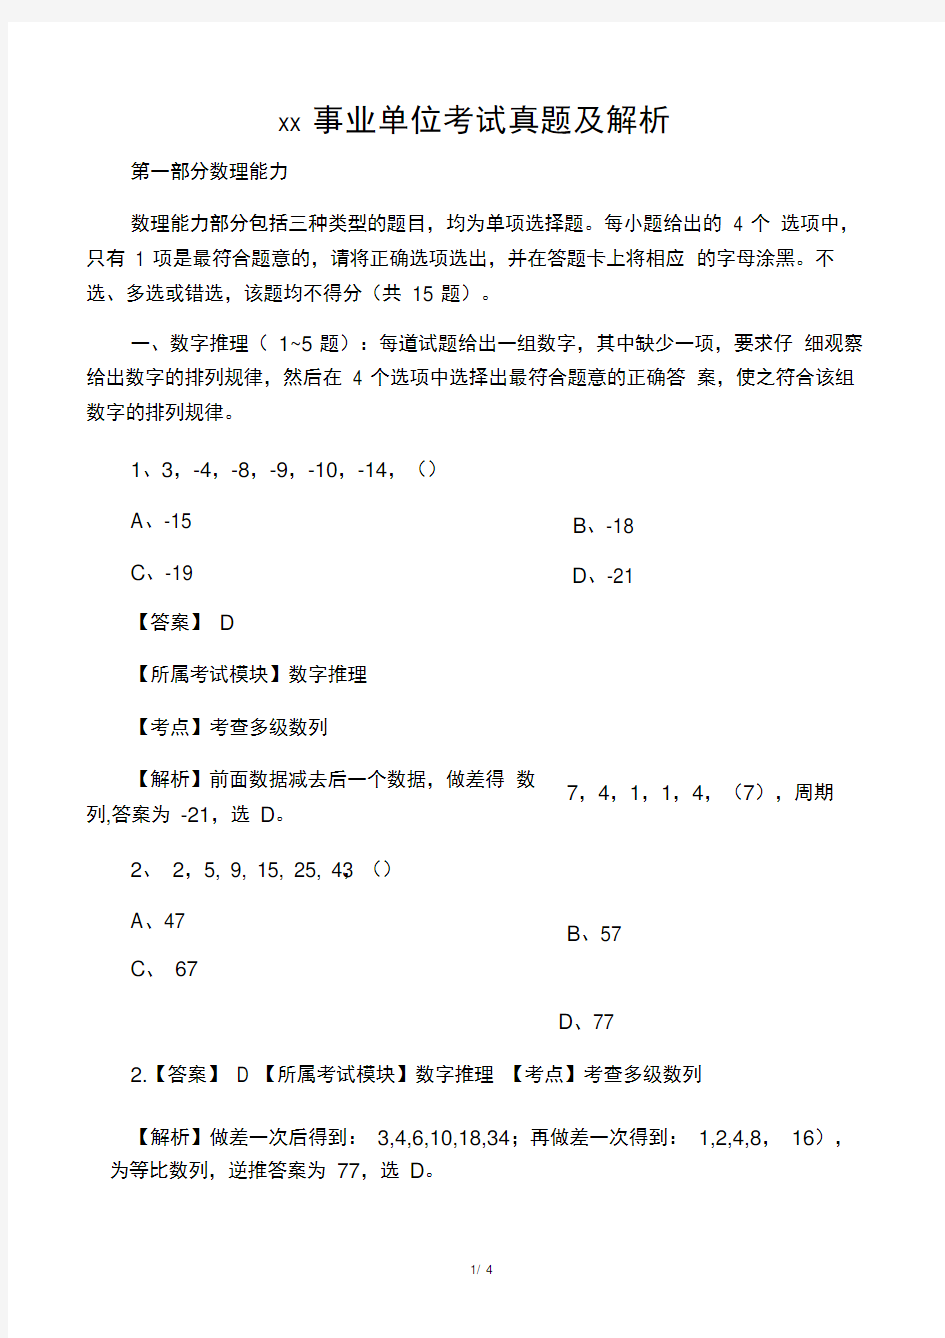 上海事业单位考试真题及解析(14年真题)